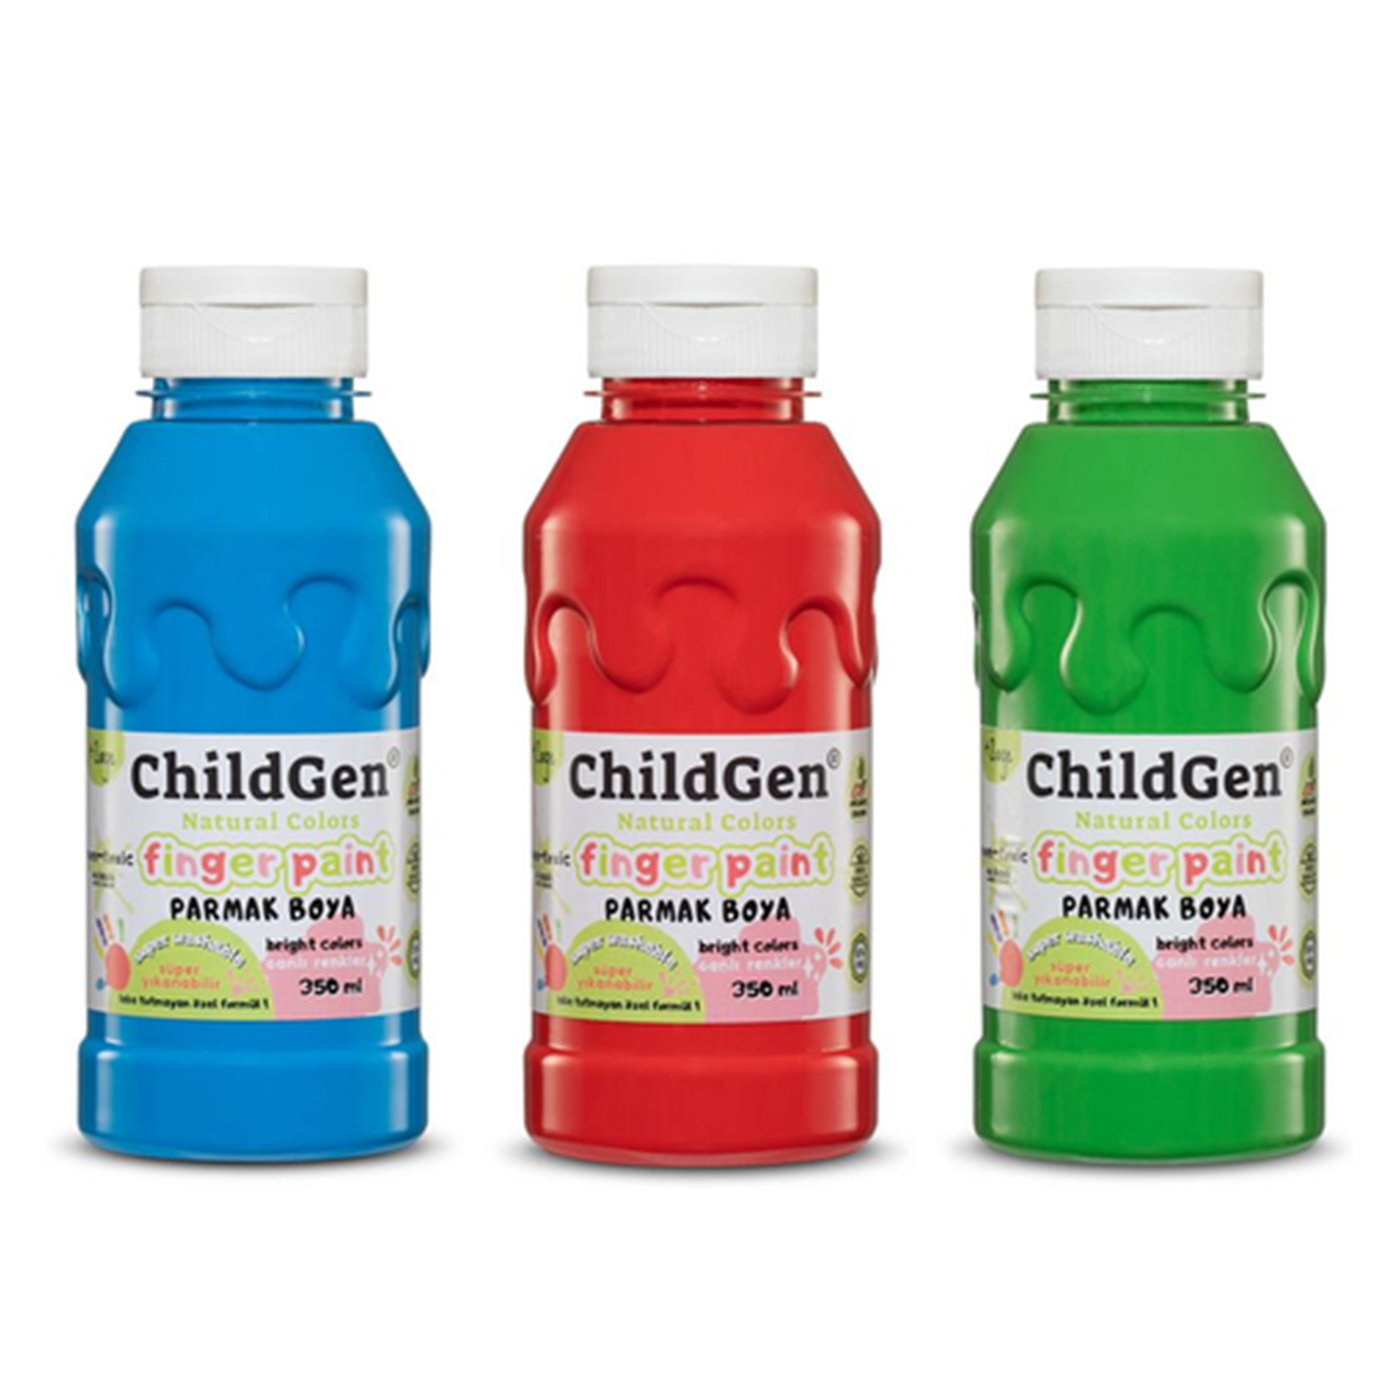  Childgen Süper Yıkanabilir 3'lü Parmak Boya (350 ml x 3) Mavi Yeşil Kırmızı